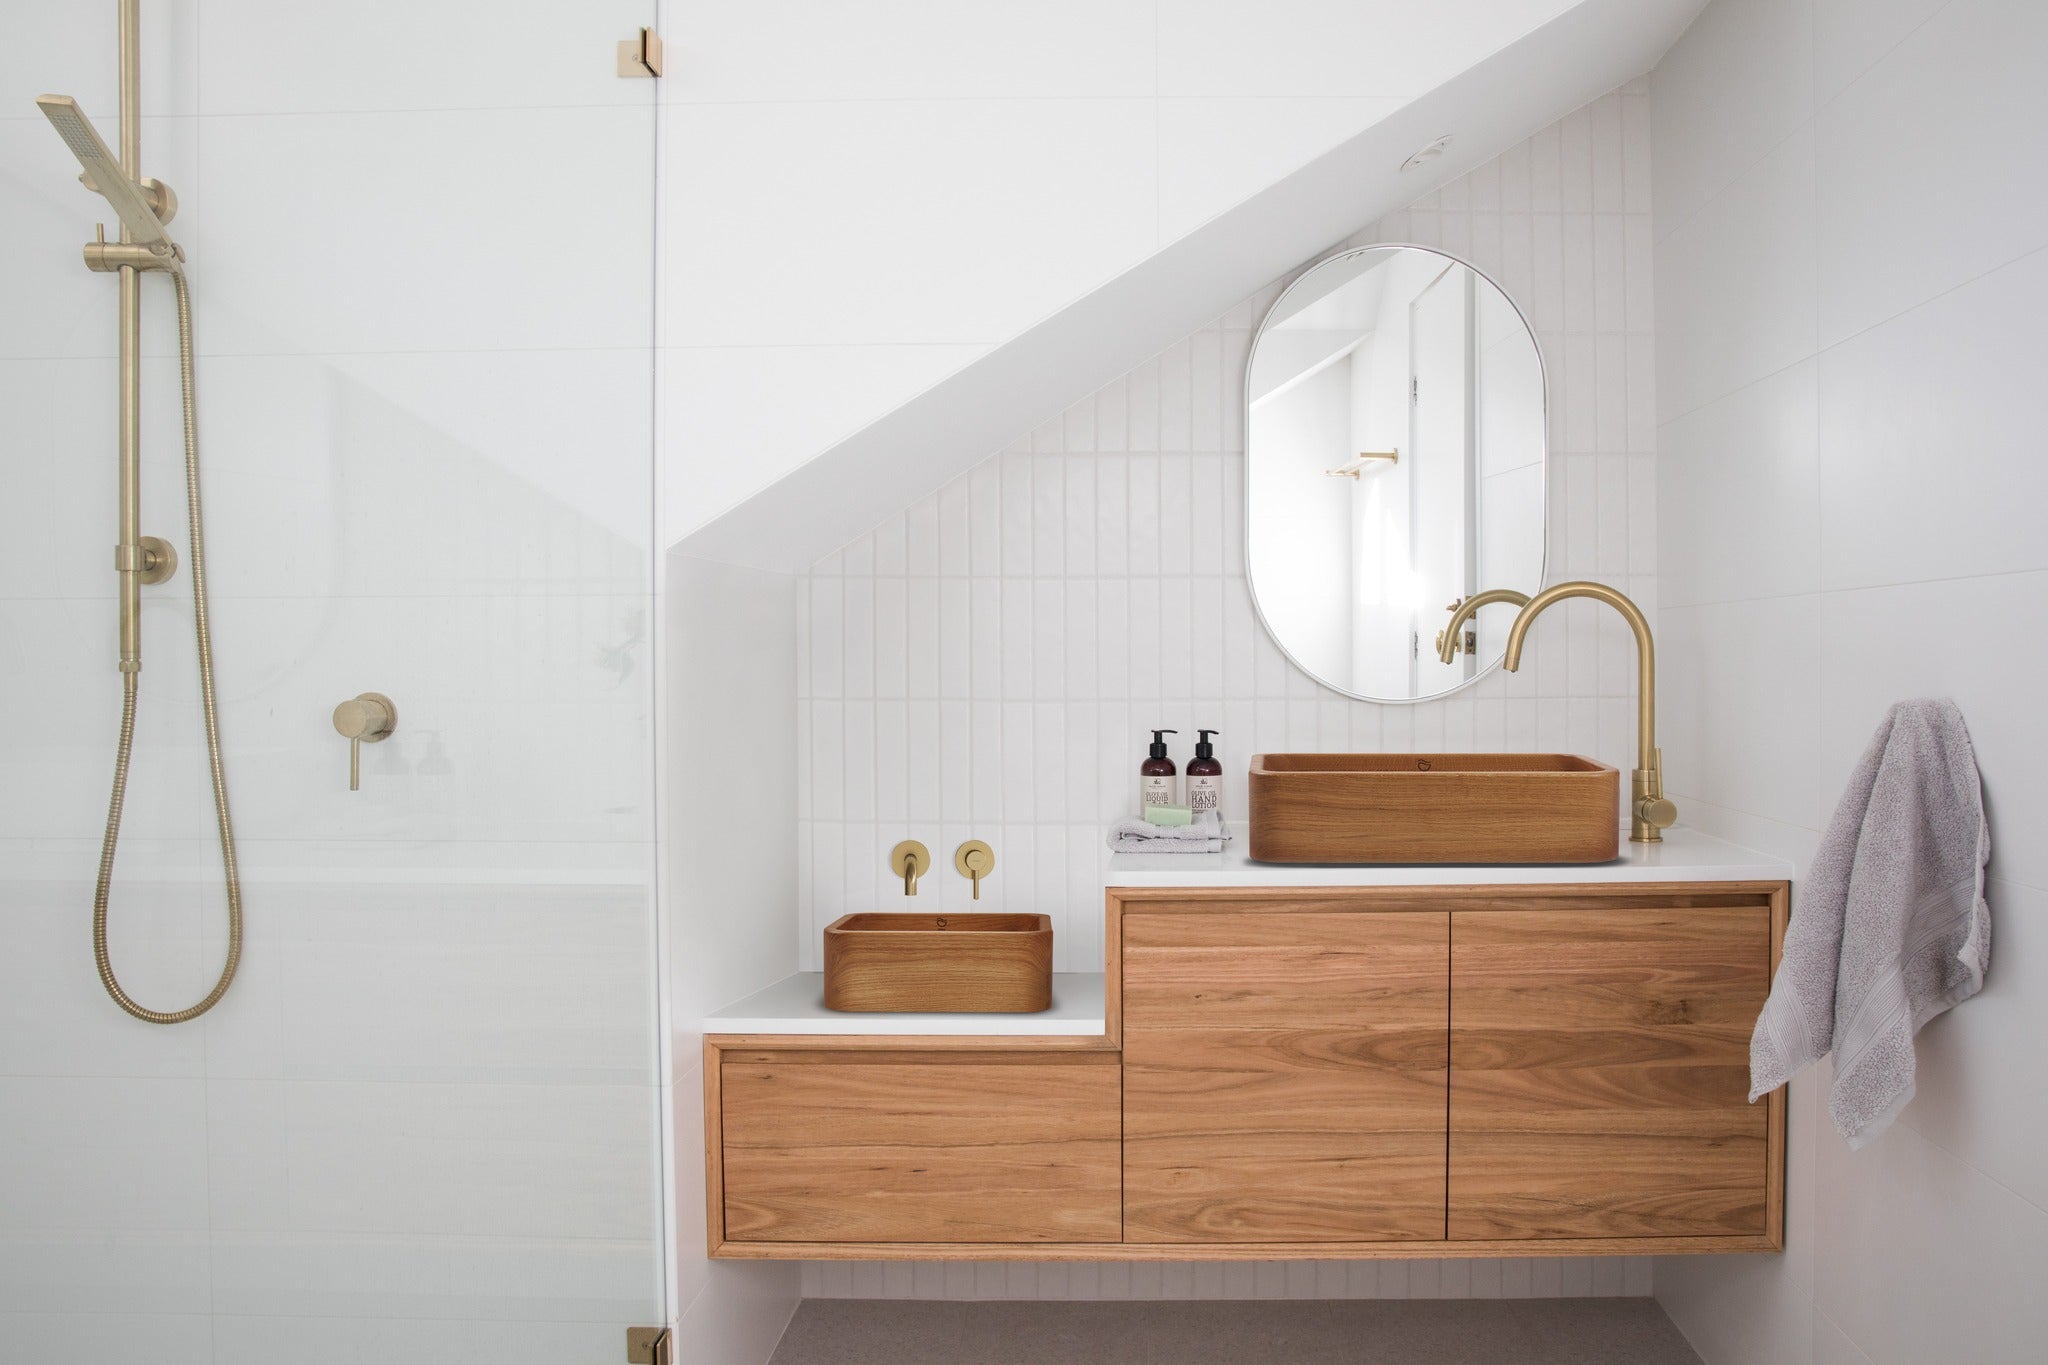 Vielseitiges Aufsatzwaschbecken aus Holz - Passt in moderne, klassische und rustikale Badezimmerdesigns.